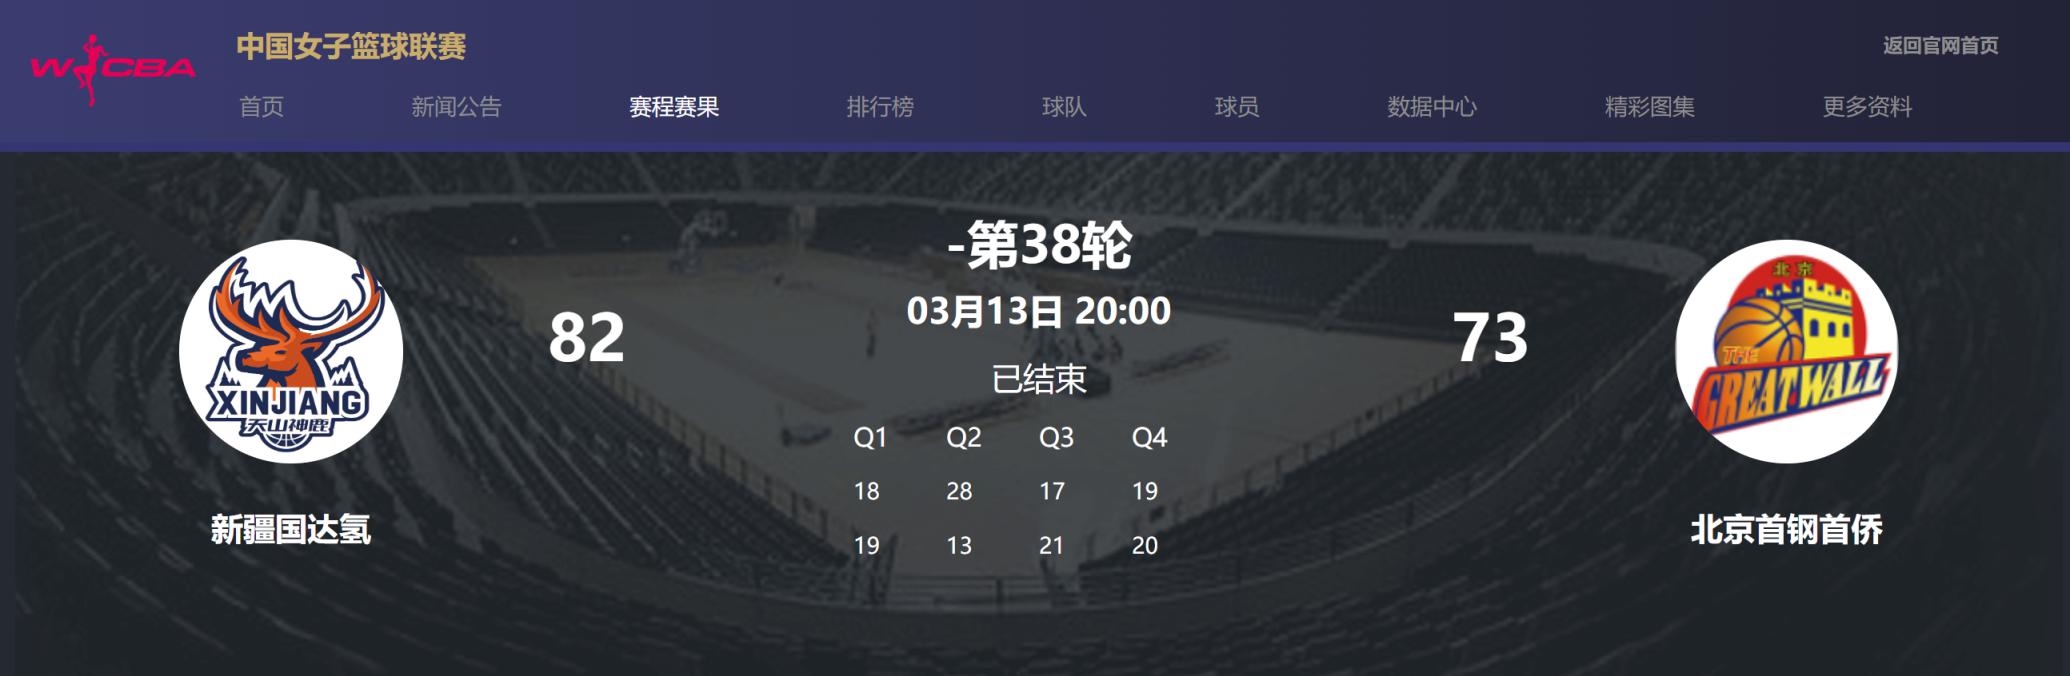 北京女篮排名常规赛第十 季后赛对手待定(1)